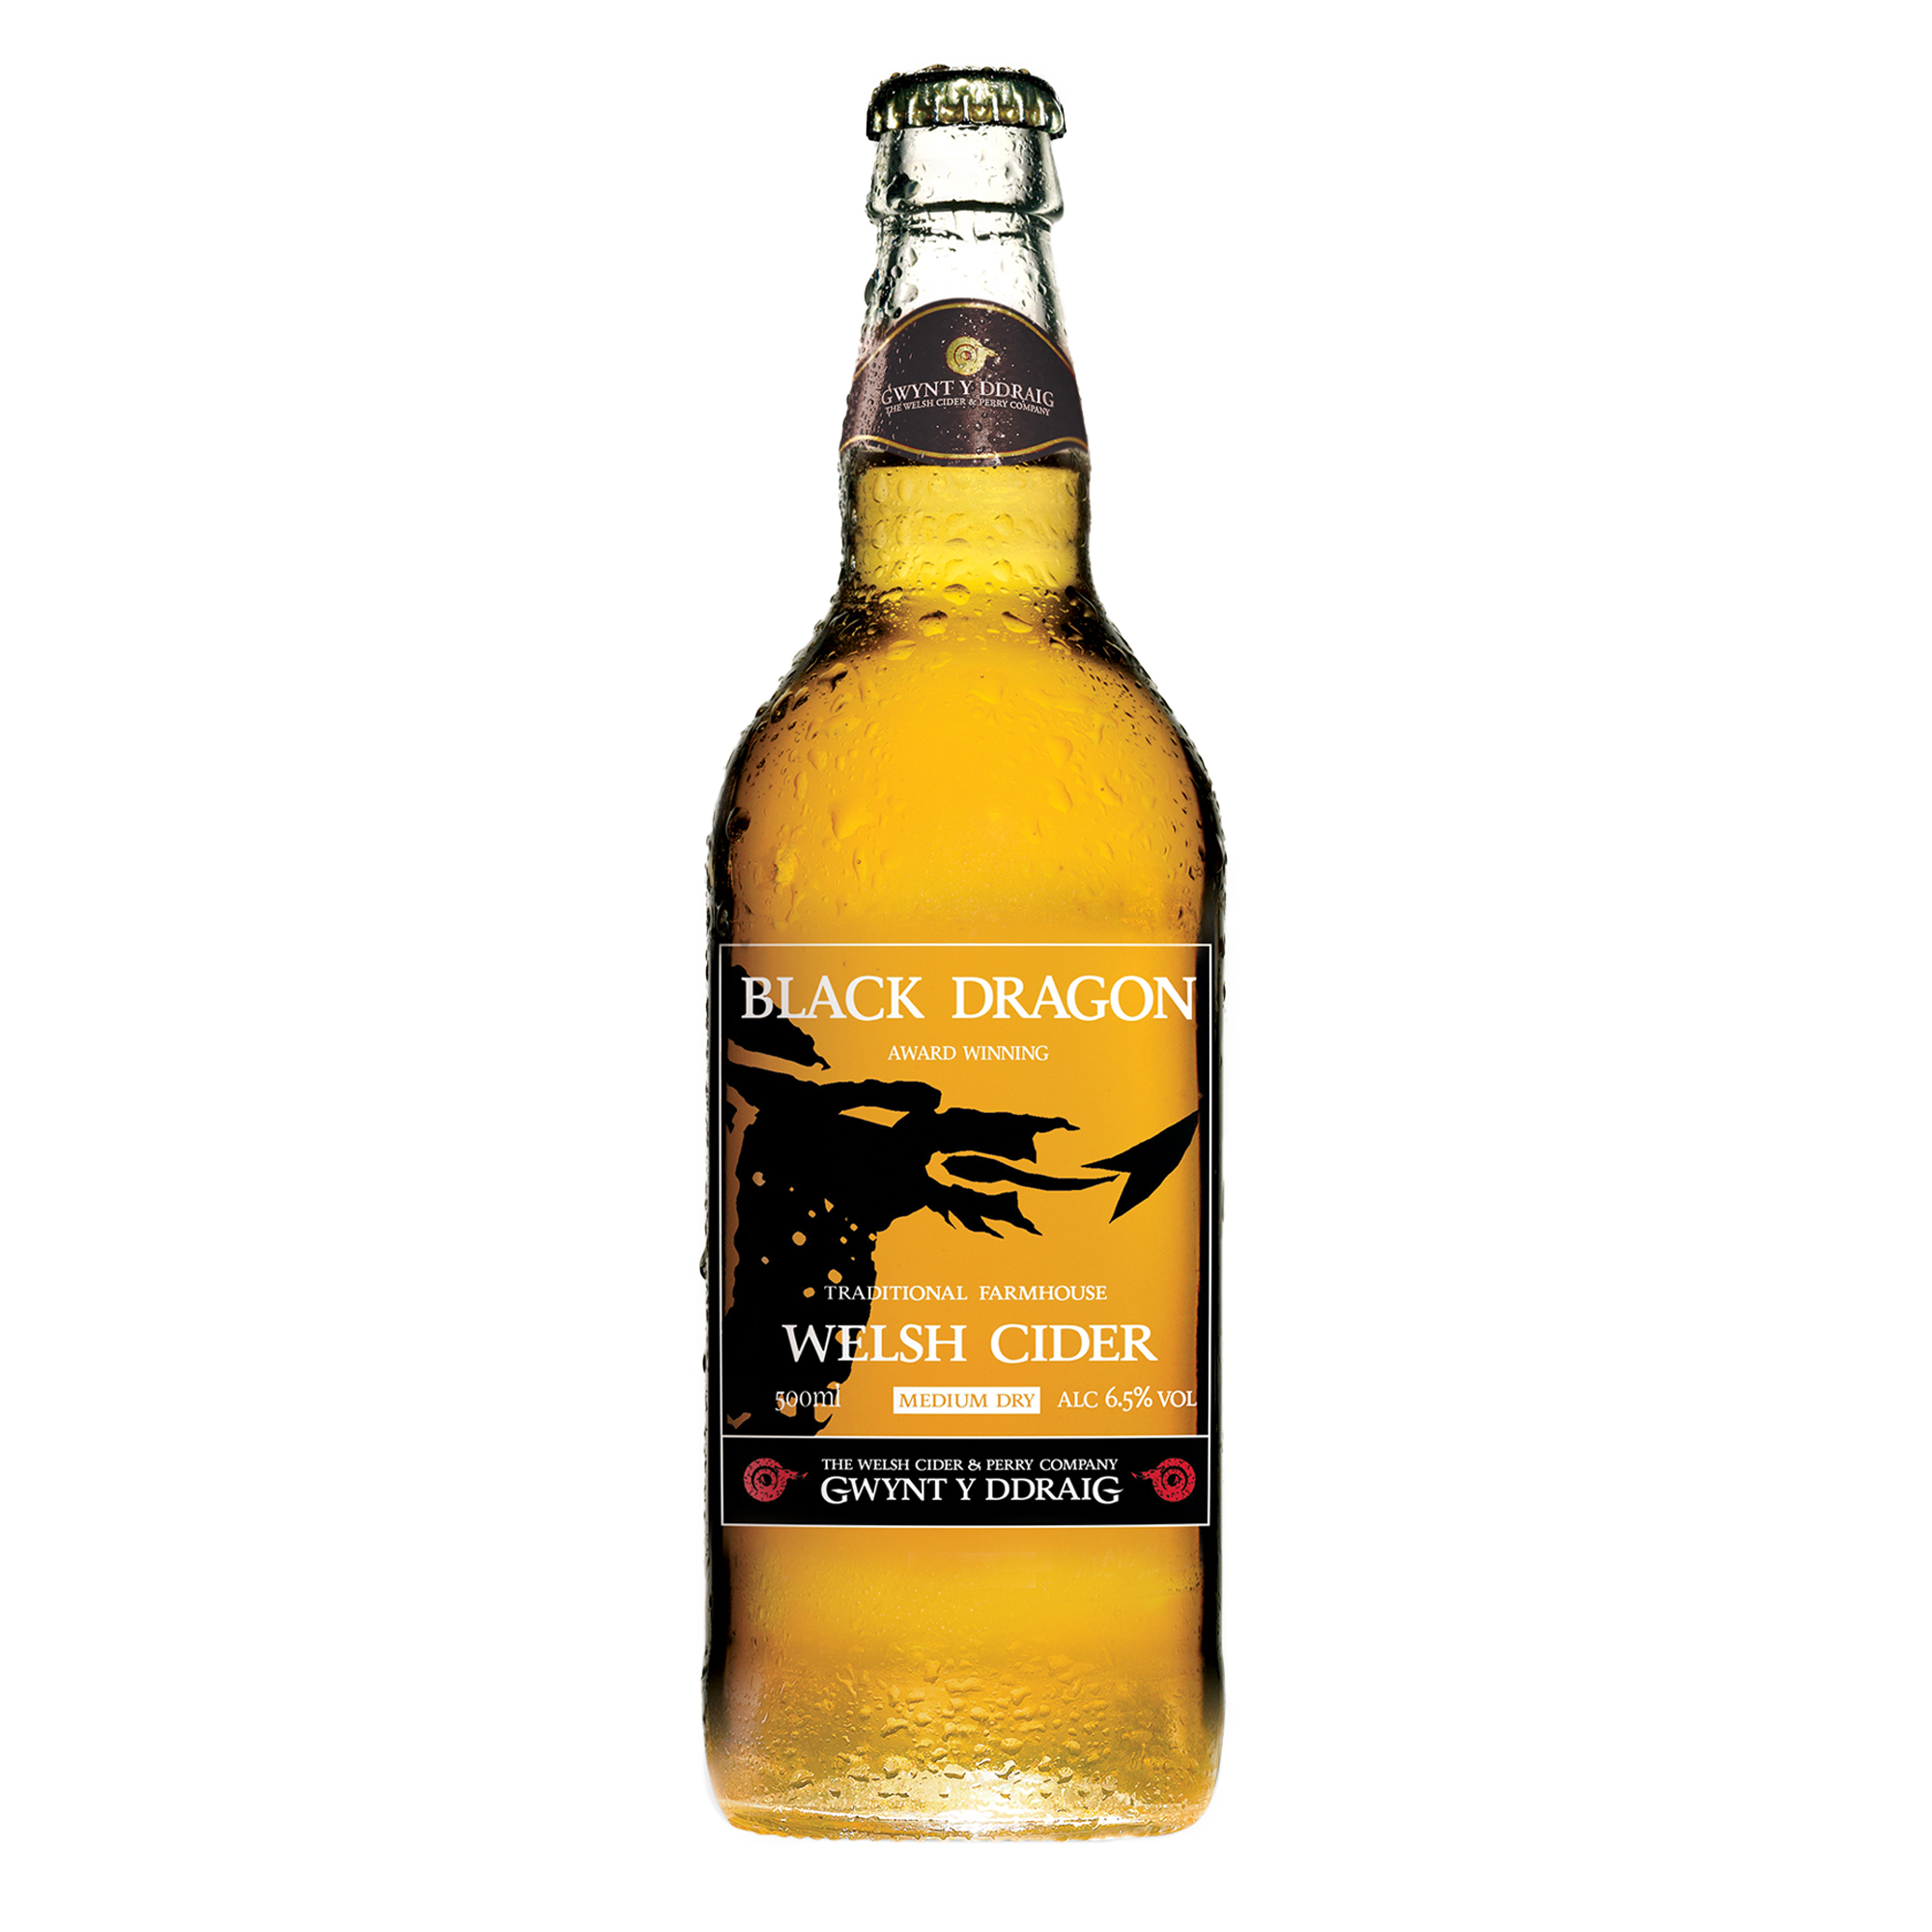 Gwynt y Ddraig Black Dragon Cider 500ml